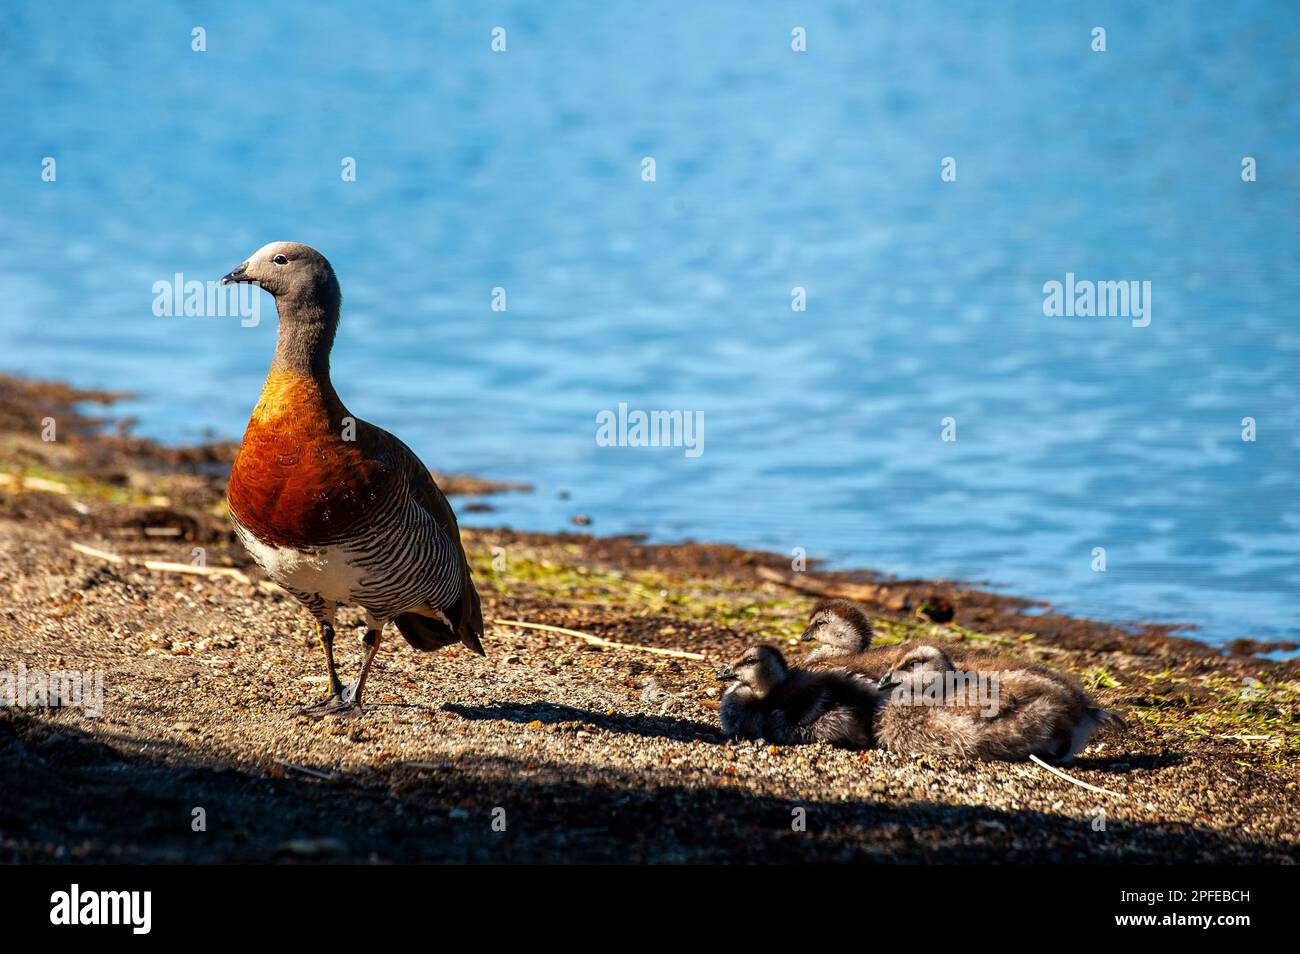 L'oca patagoniana (Ashy heded goose) è abbondante sulle rive del lago Correntoso, Neuquén, Argentina Foto Stock